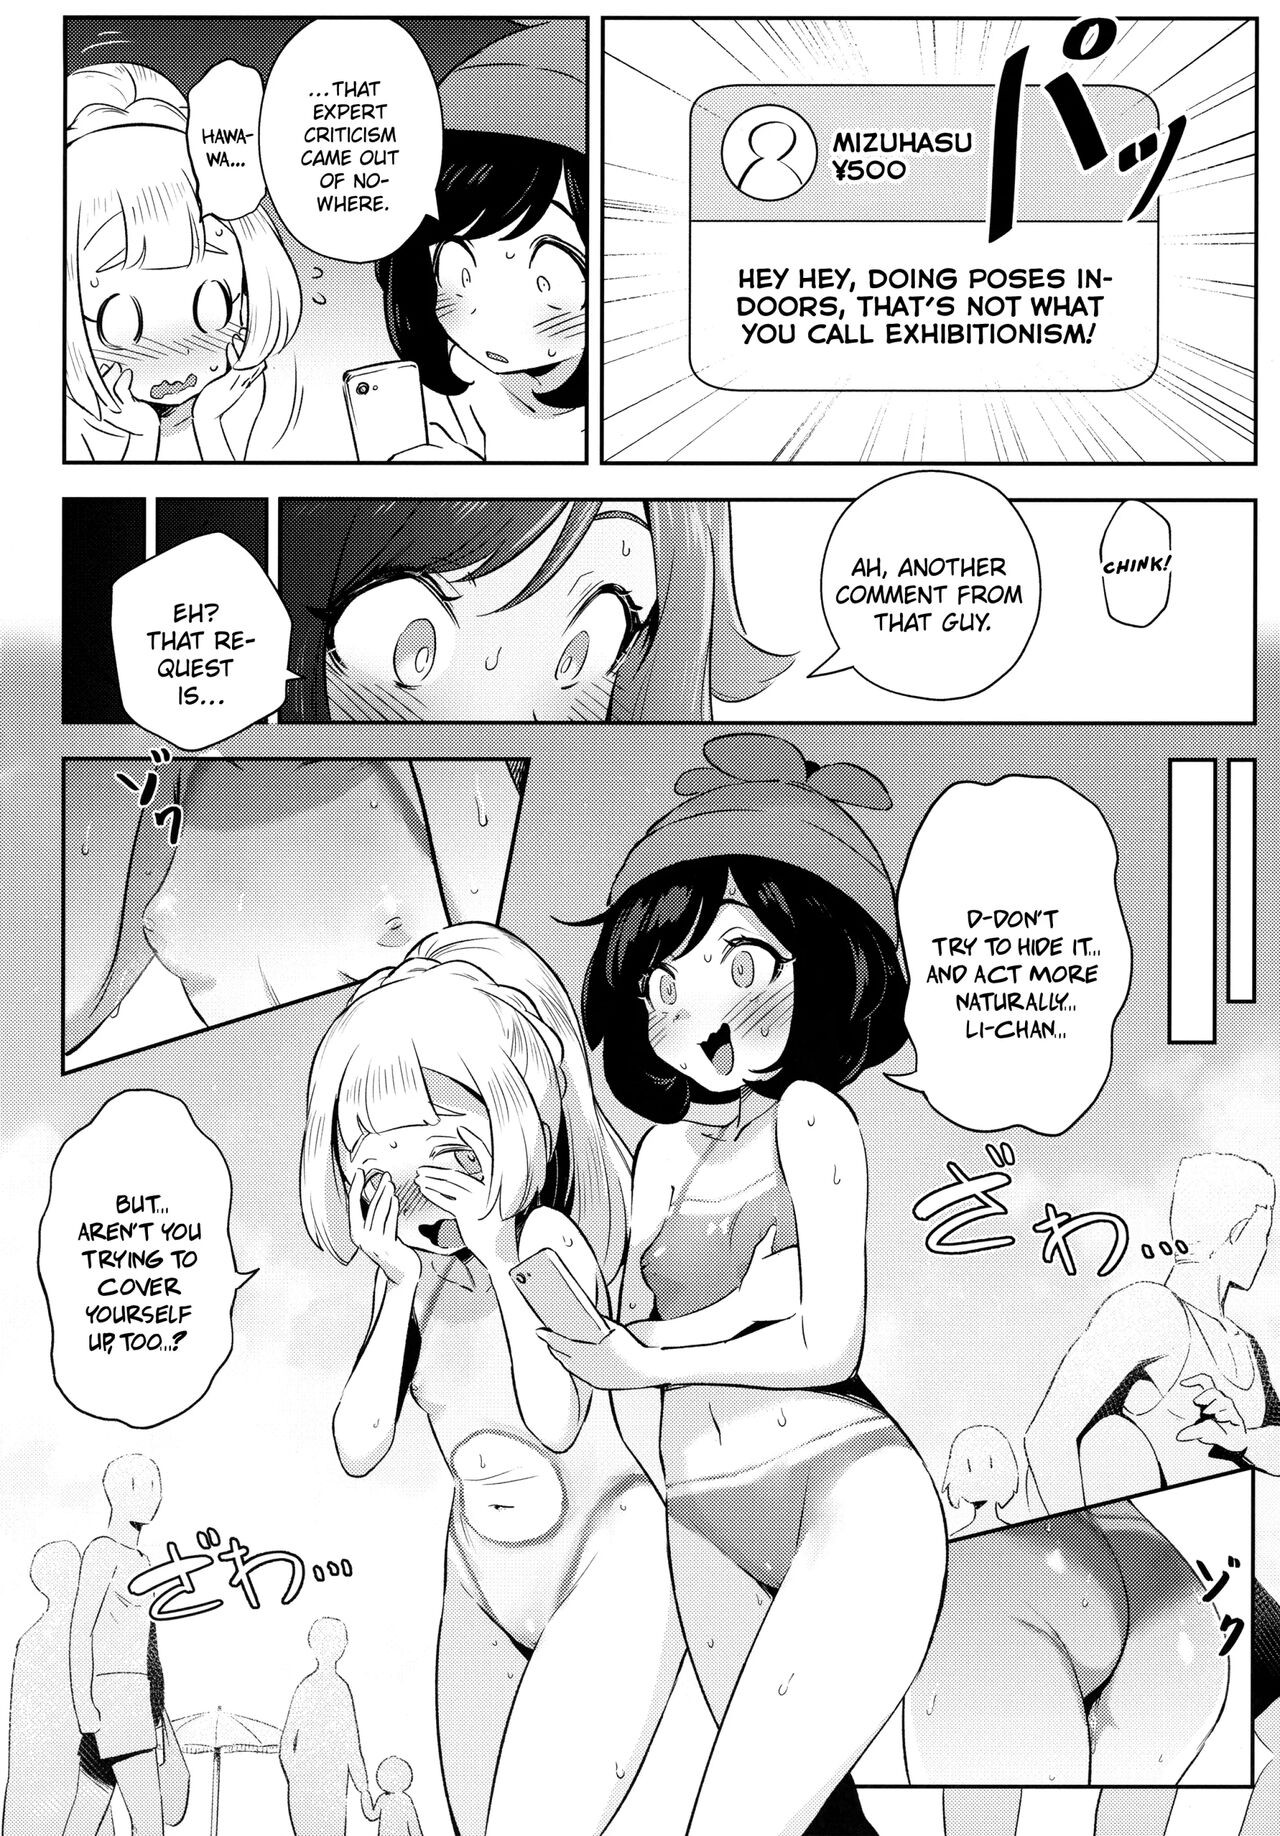 Girl’s Little Secret Adventure Part 2 Porn Comic english 10